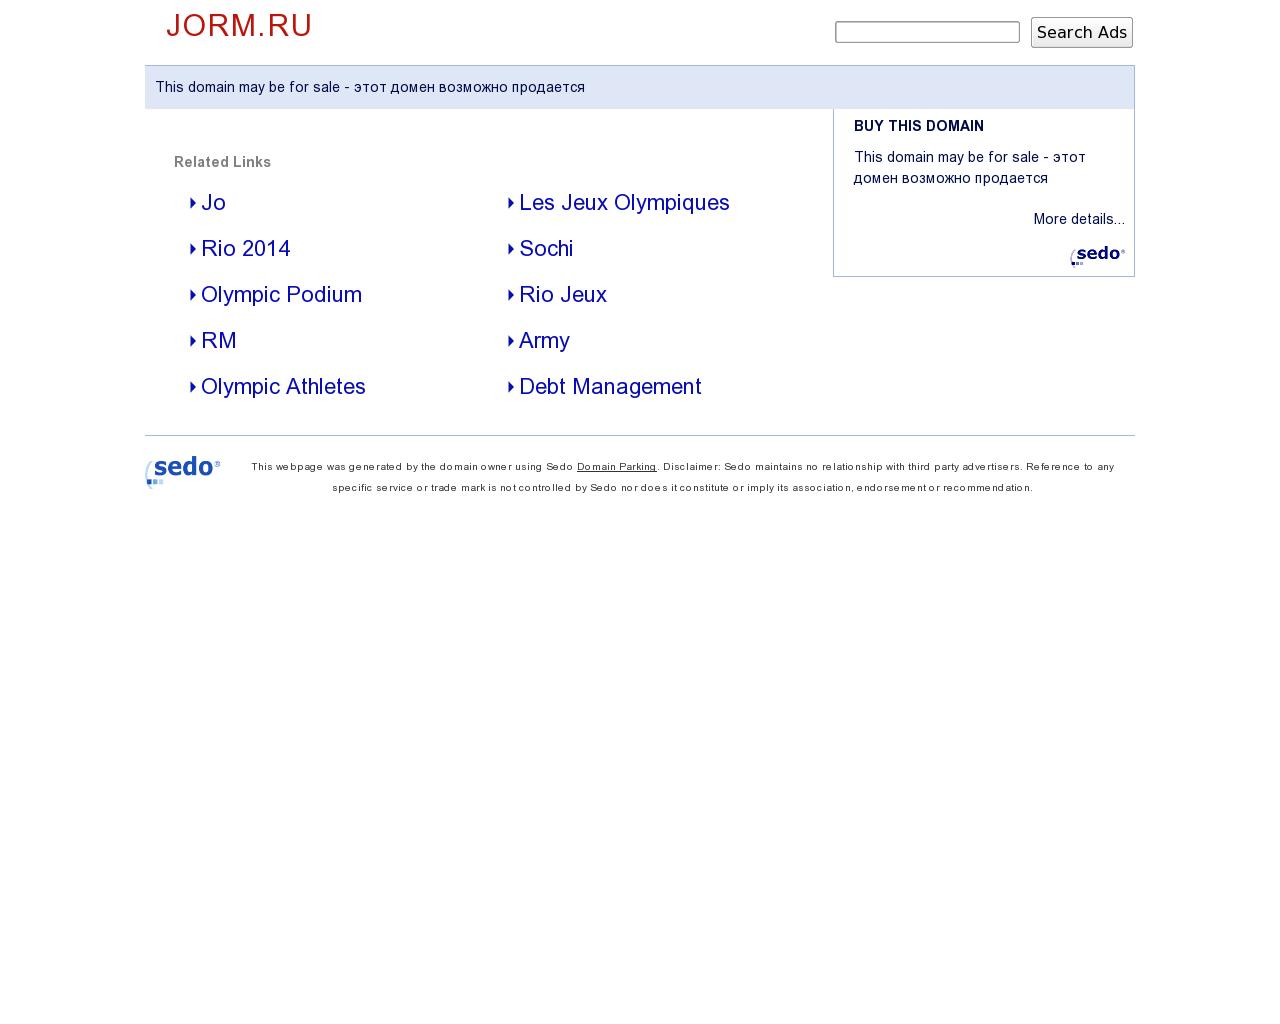 Изображение сайта jorm.ru в разрешении 1280x1024